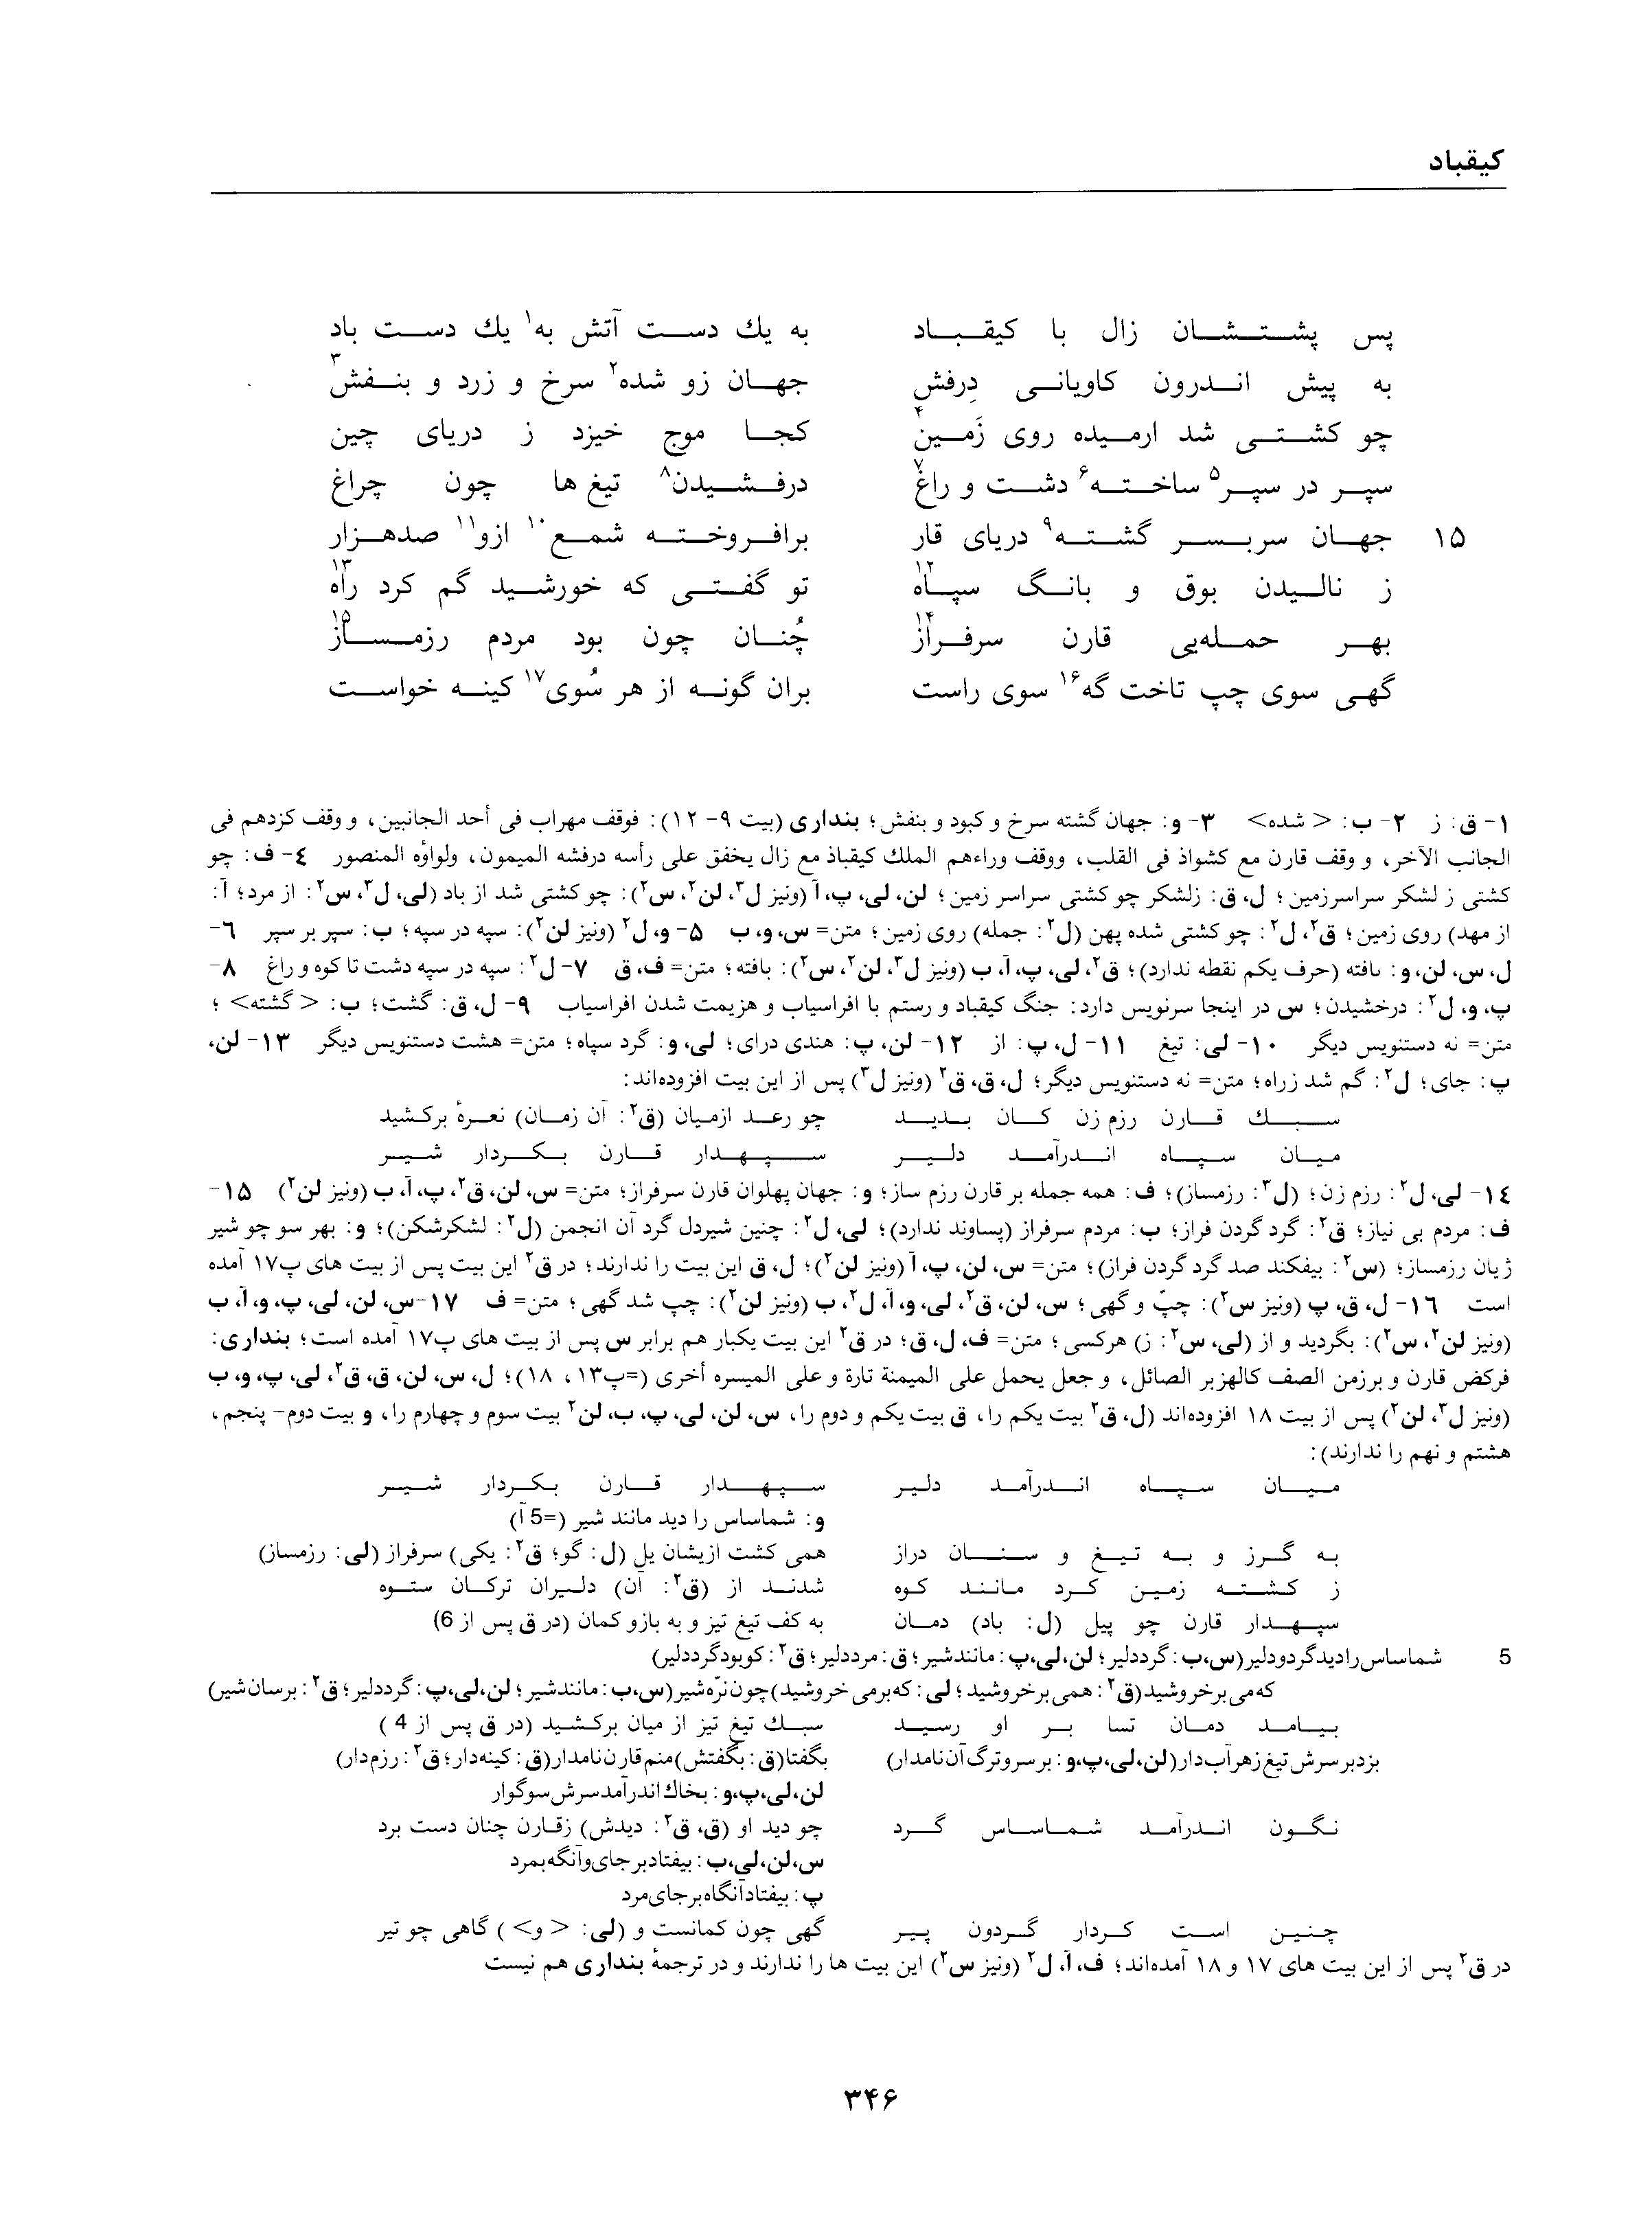 vol. 1, p. 346